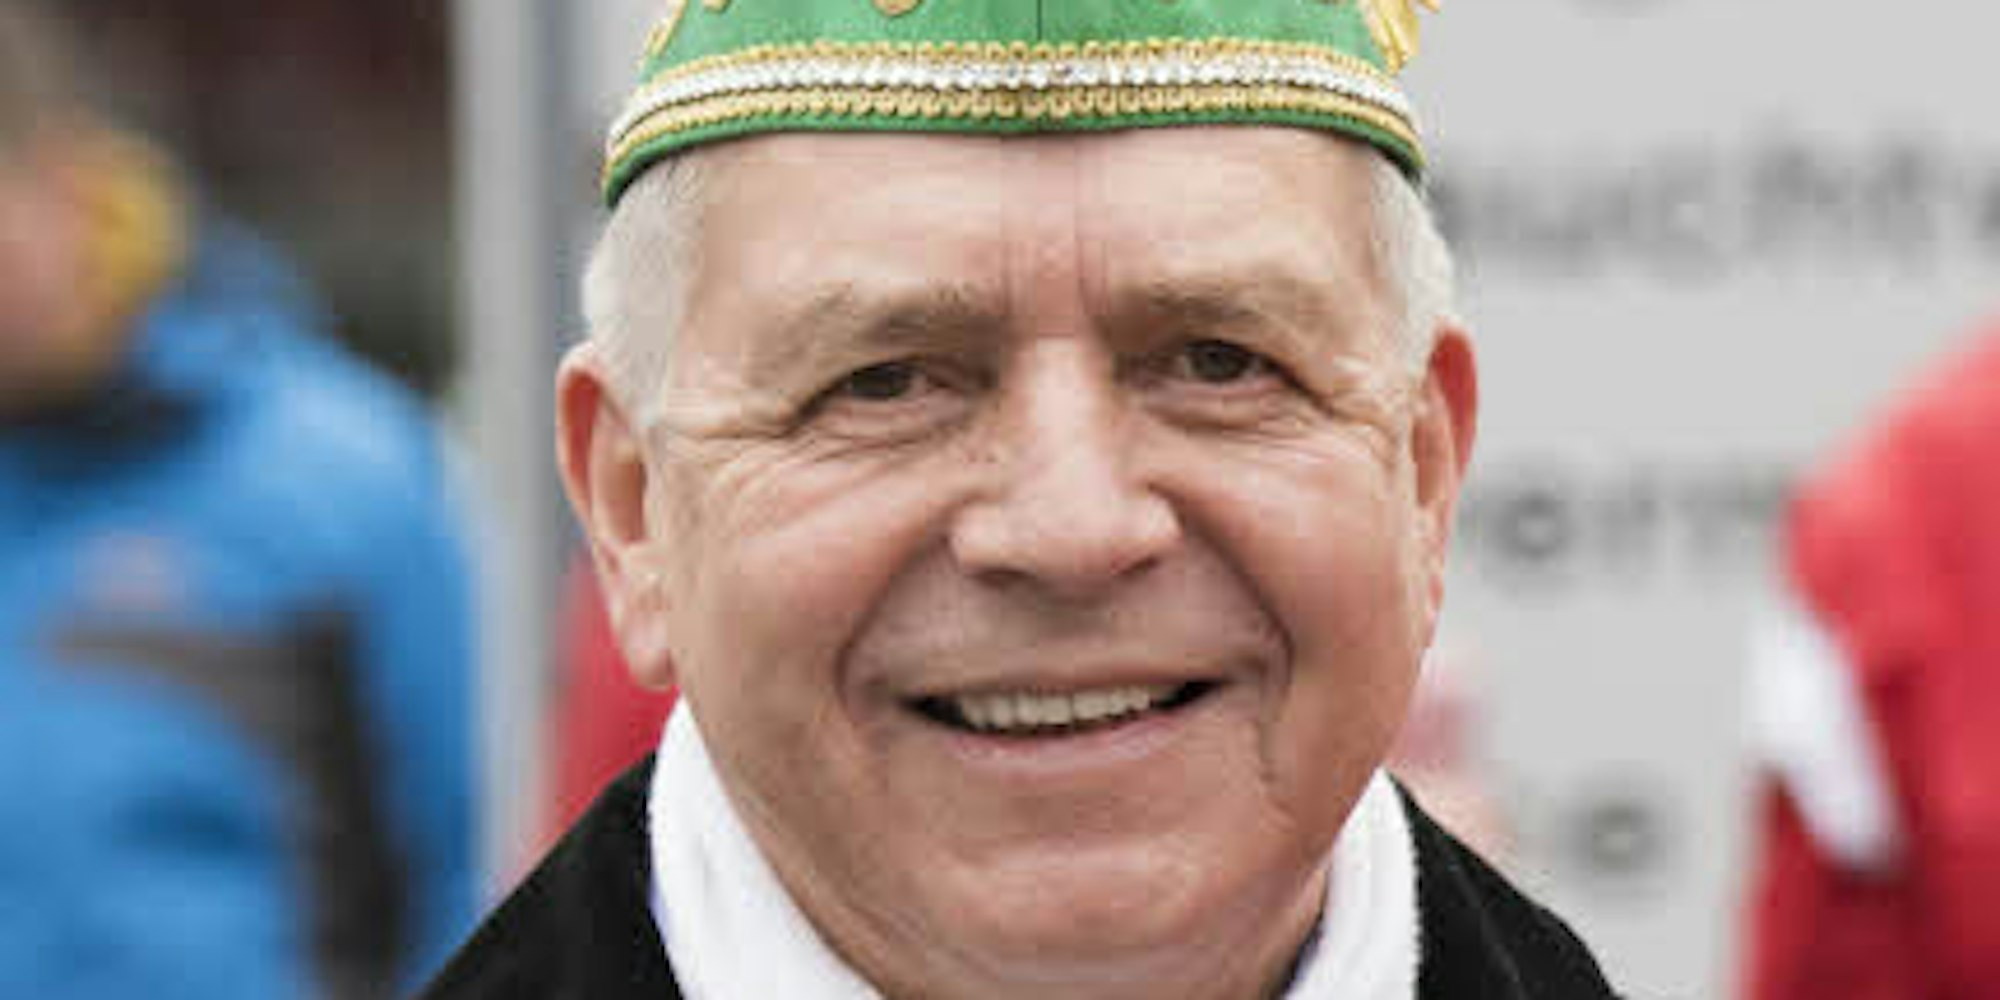 Rudi Krautilik war in der Zeit von 2000 bis 2013 Vorsitzender der Karnevalsgesellschaft Närrische Oberberger. 